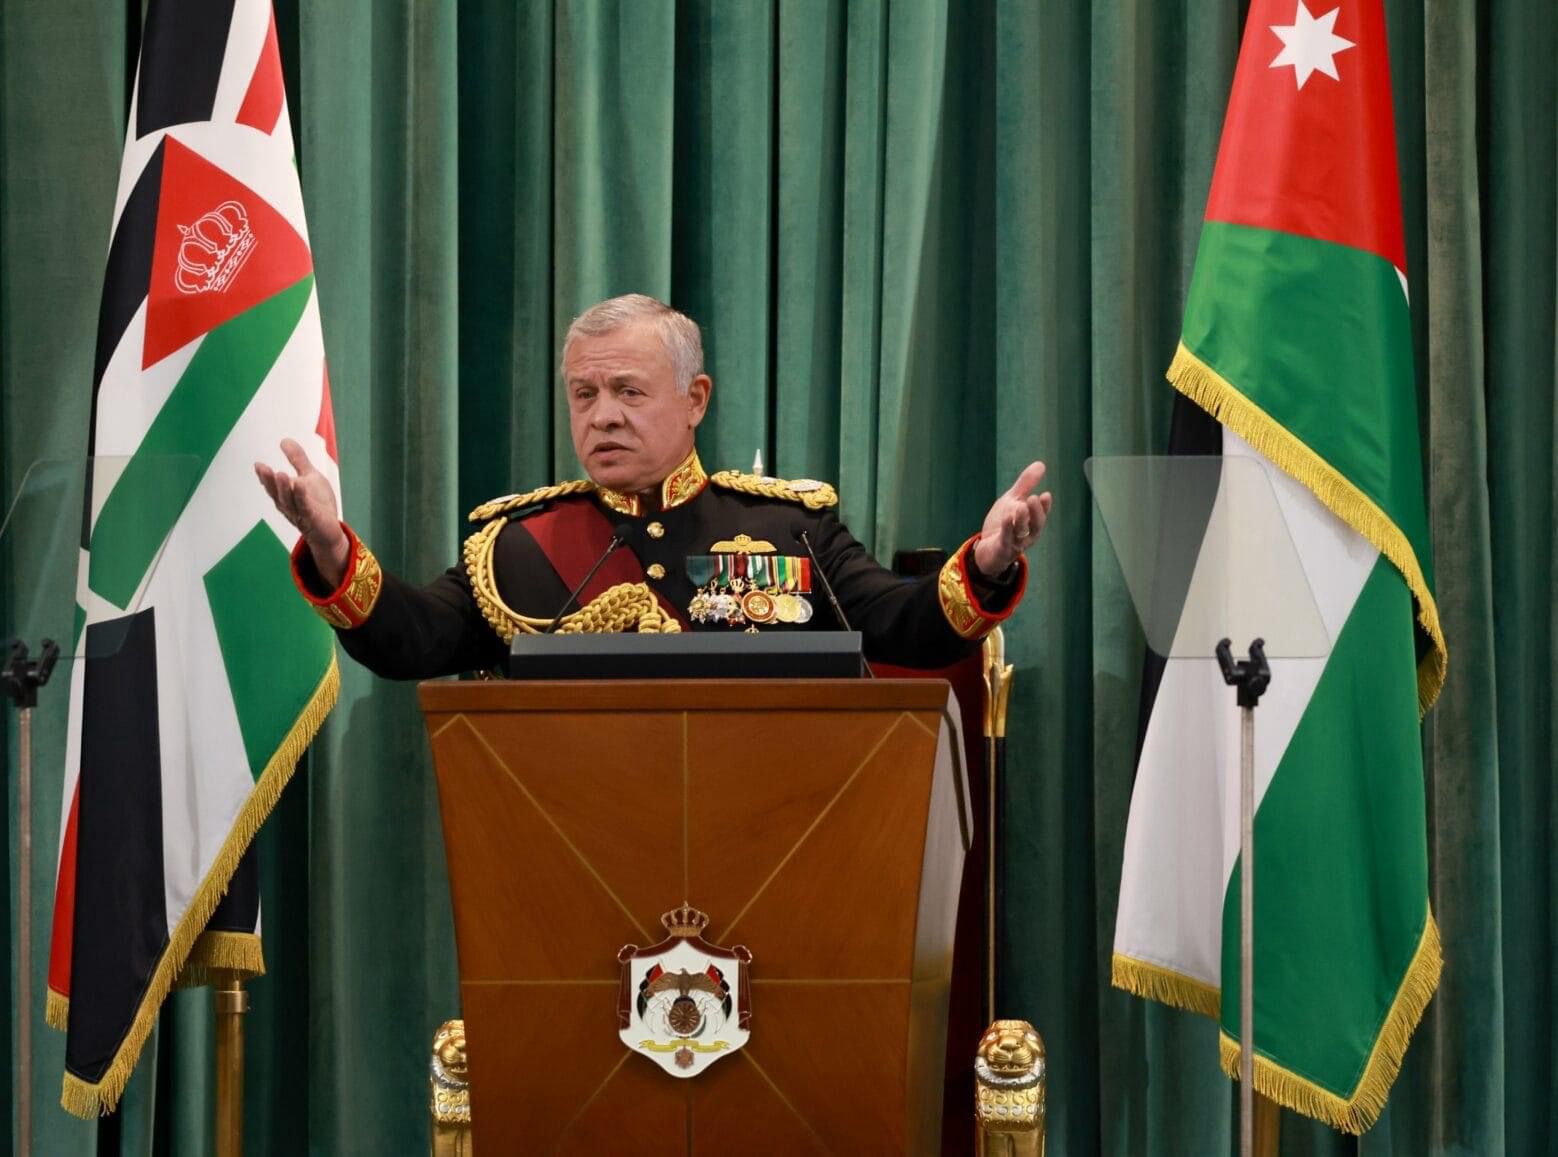 الملك عبدالله الثاني واستراتيجية الأردن السياسية: تأكيد على الديمقراطية والتضامن العربي في ظل التحديات الراهنة